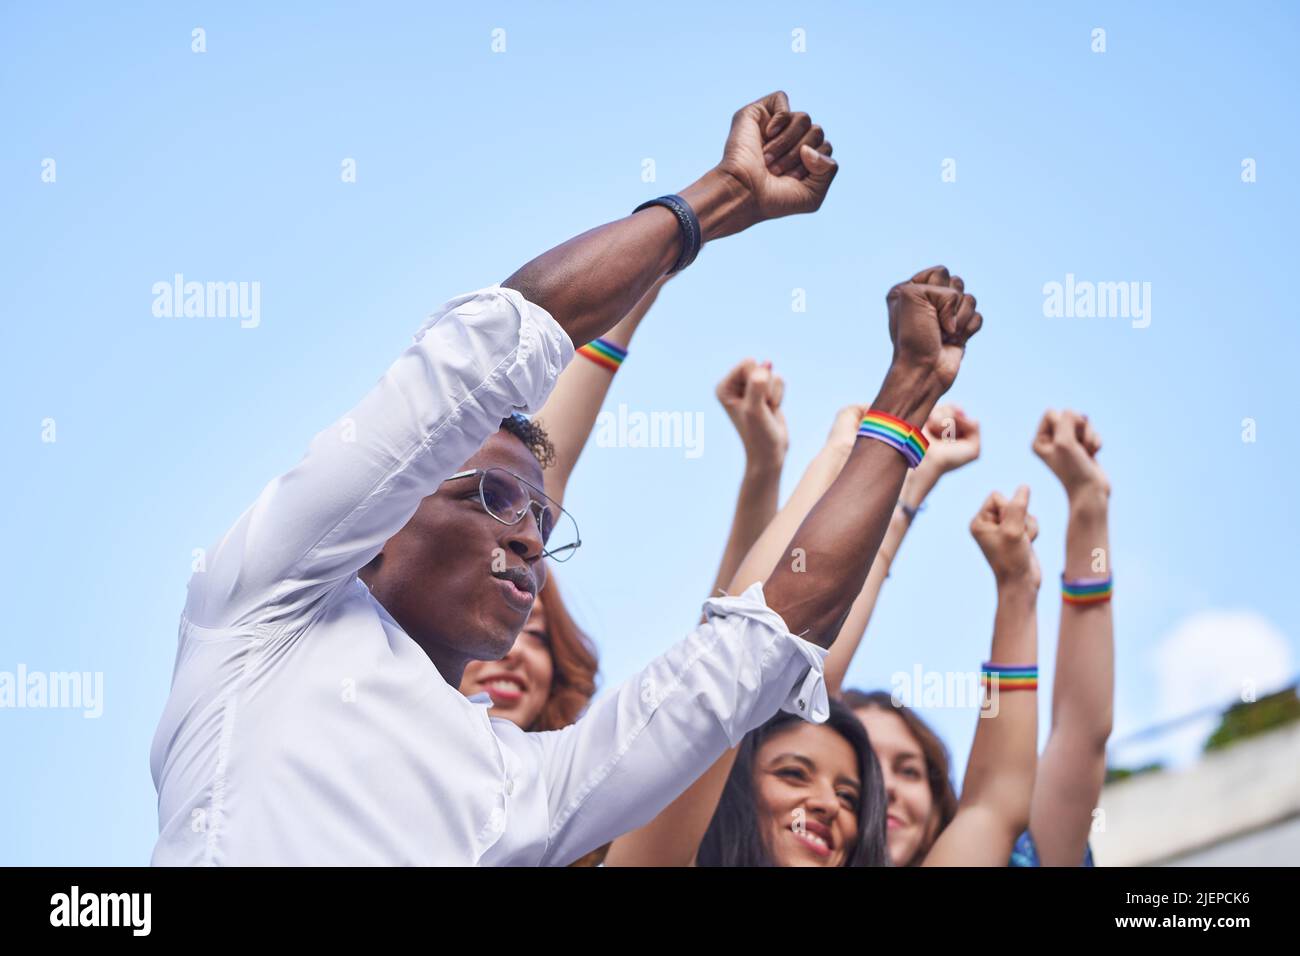 Groupe de personnes multiraciales qui élèvent des poings avec des bracelets de drapeau arc-en-ciel LGBT en plein air. Concept de diversité, d'égalité et d'unité. Banque D'Images